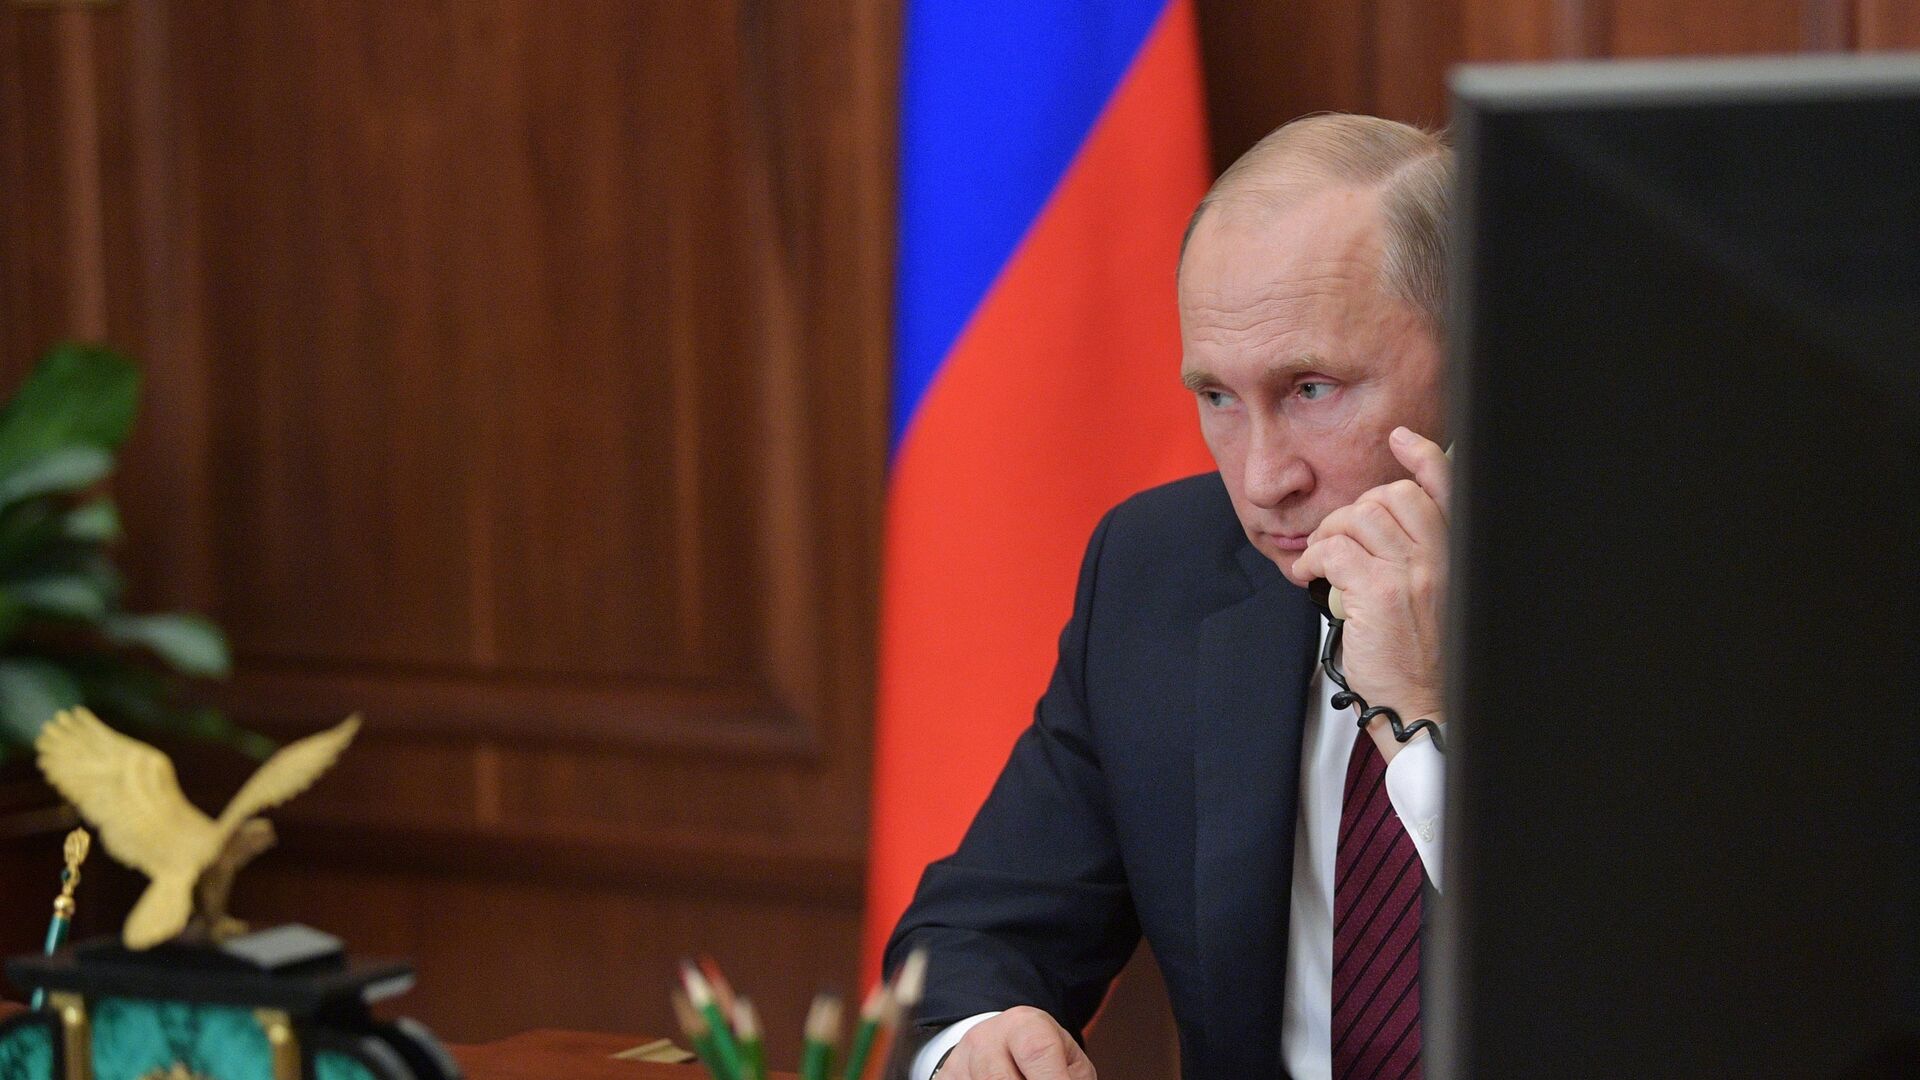 Все, о чем договорились Путин и Макрон, сообщил Кремль, заявила Захарова